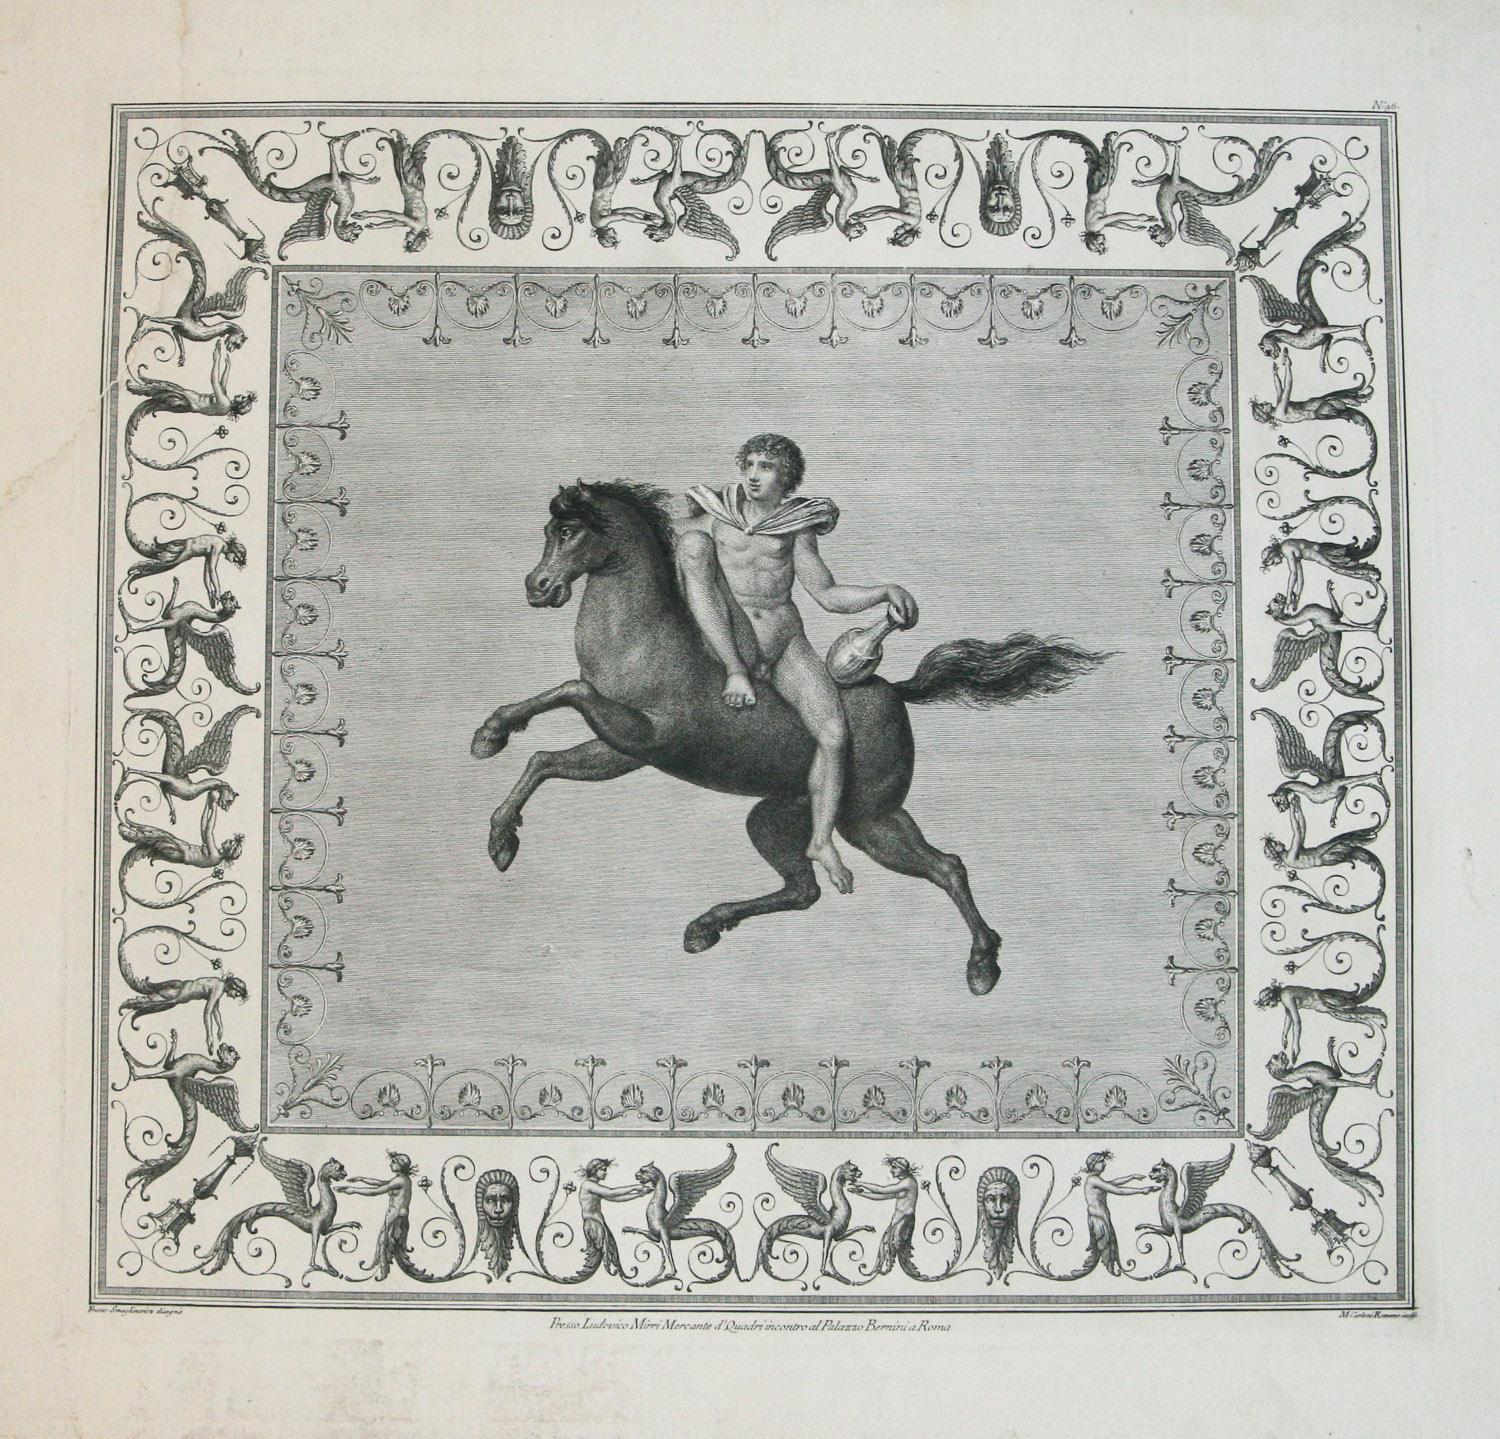 Marco Carloni Animal Print - Presse Ludovico Mirri Mercante d’Quadri incontro al Palazzo Bernini a Roma No.46